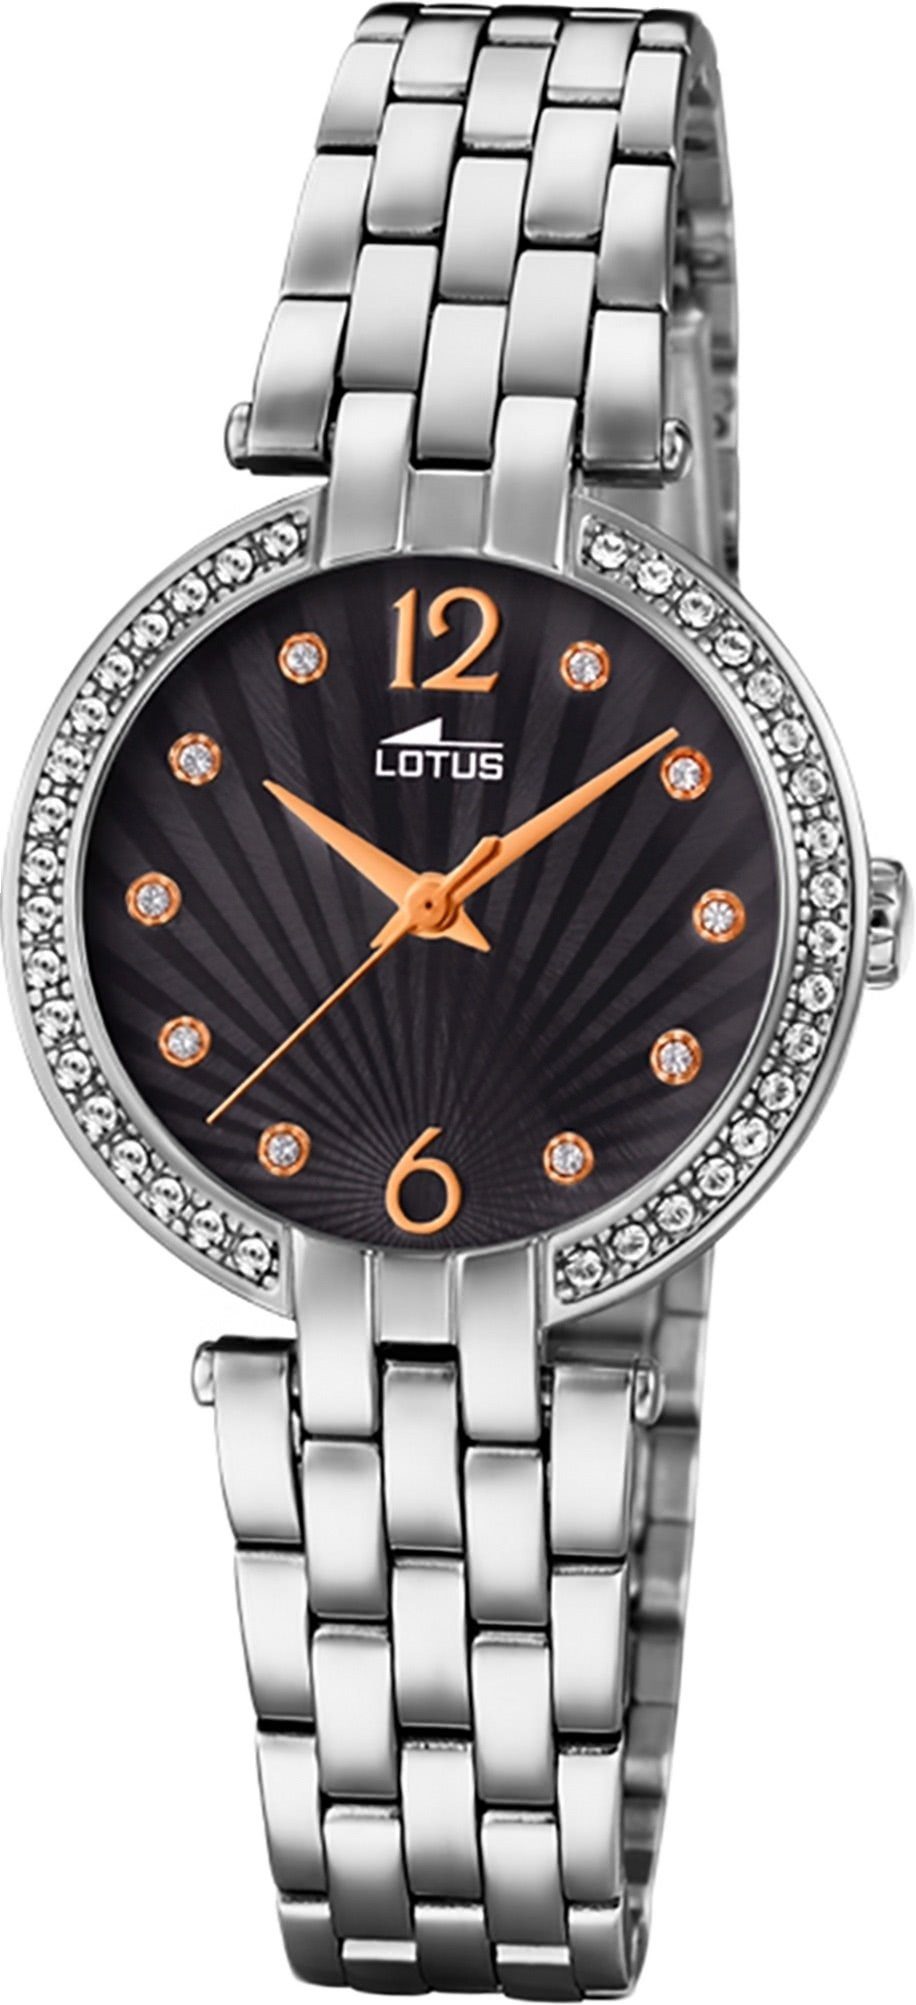 Lotus Quarzuhr Lotus Edelstahl Damen Uhr L18379/2, Damenuhr mit Edelstahlarmband, rundes Gehäuse, klein (ca. 29mm), Fashi